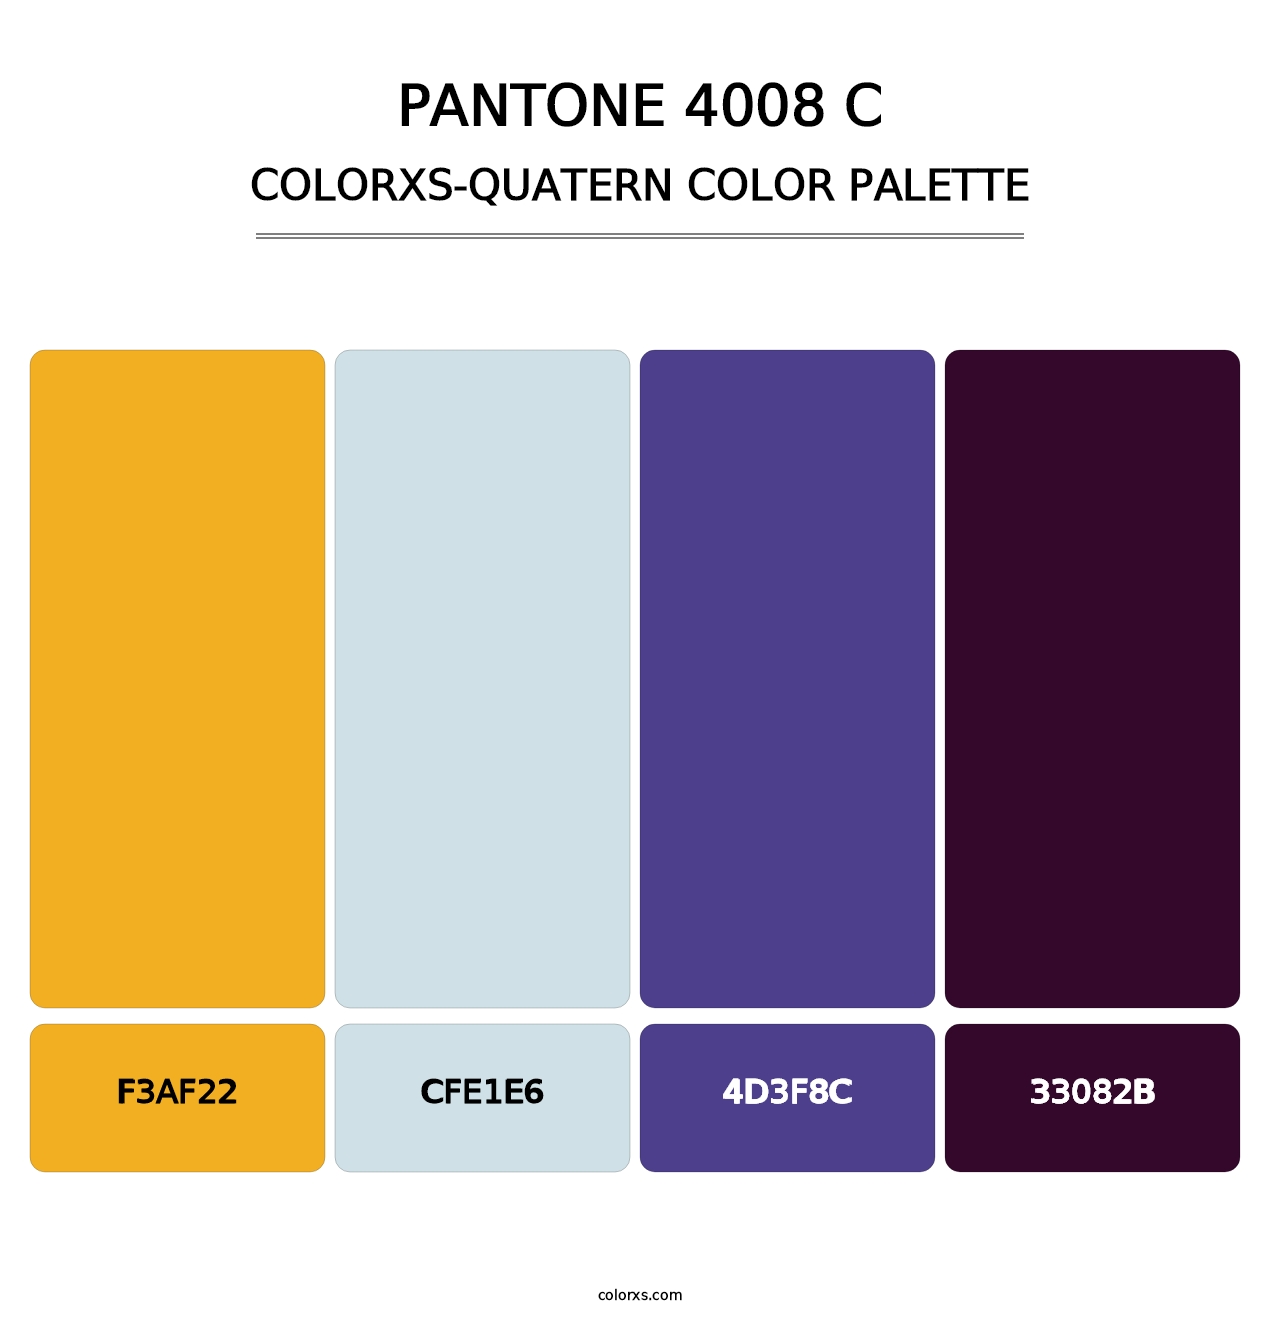 PANTONE 4008 C - Colorxs Quatern Palette